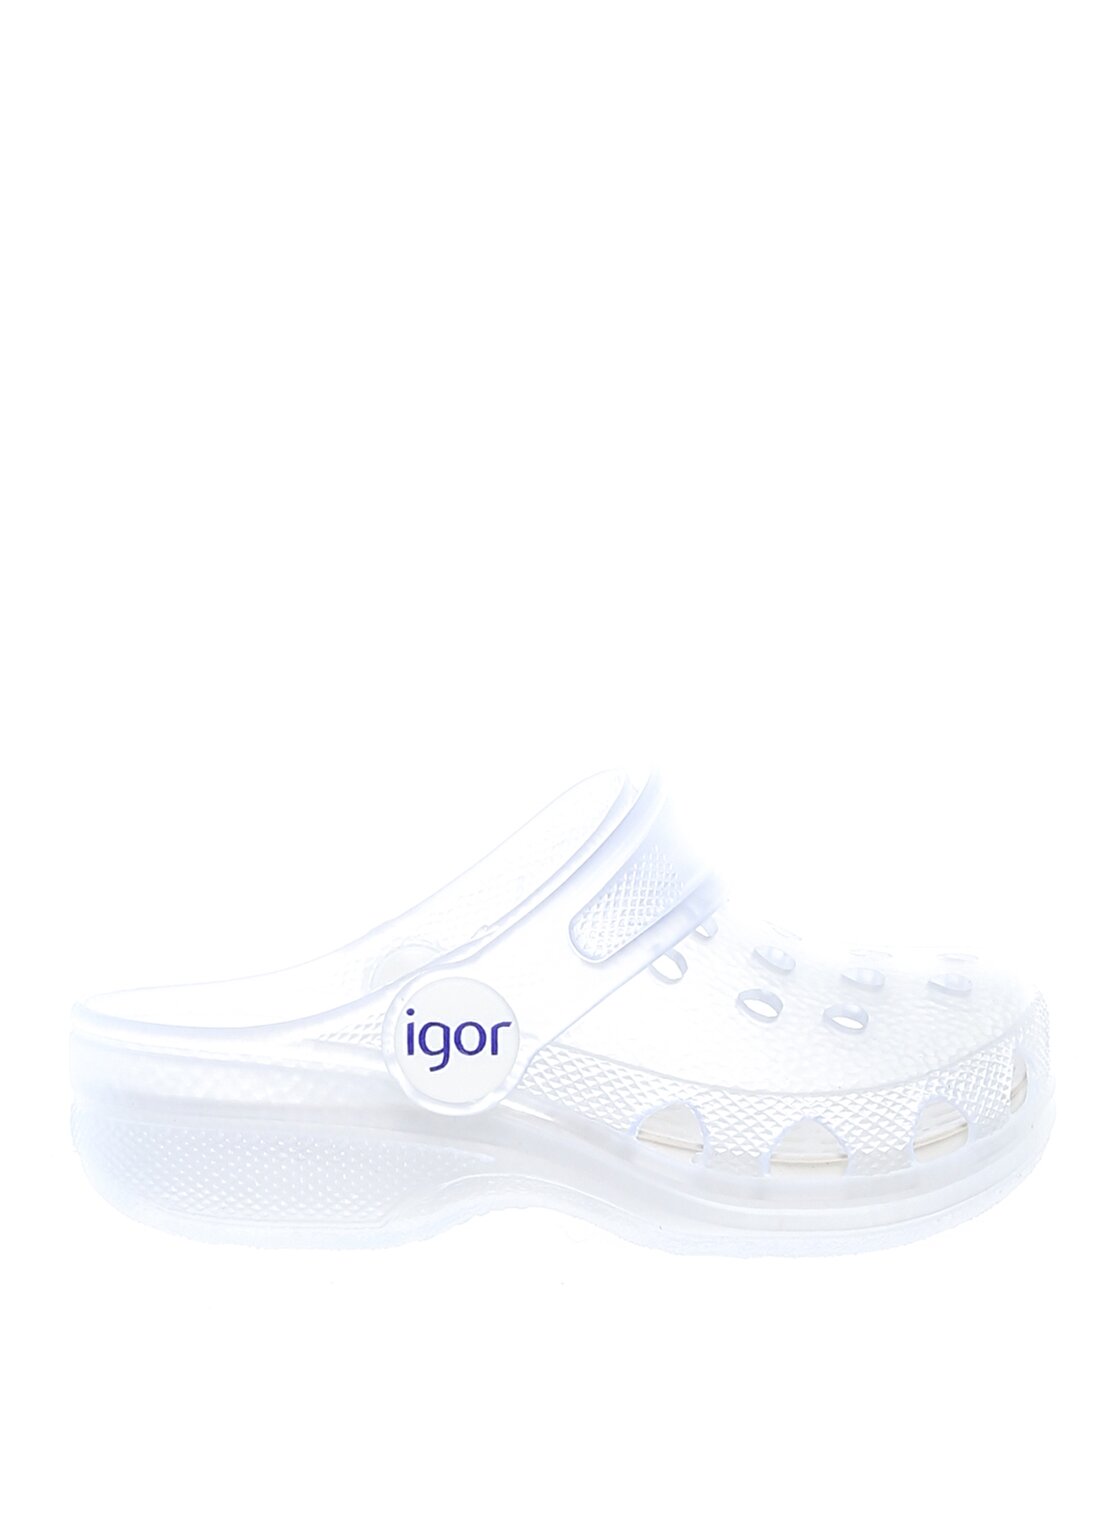 Igor Açık Beyaz Çocuk Sandalet S10226 POPPY MC